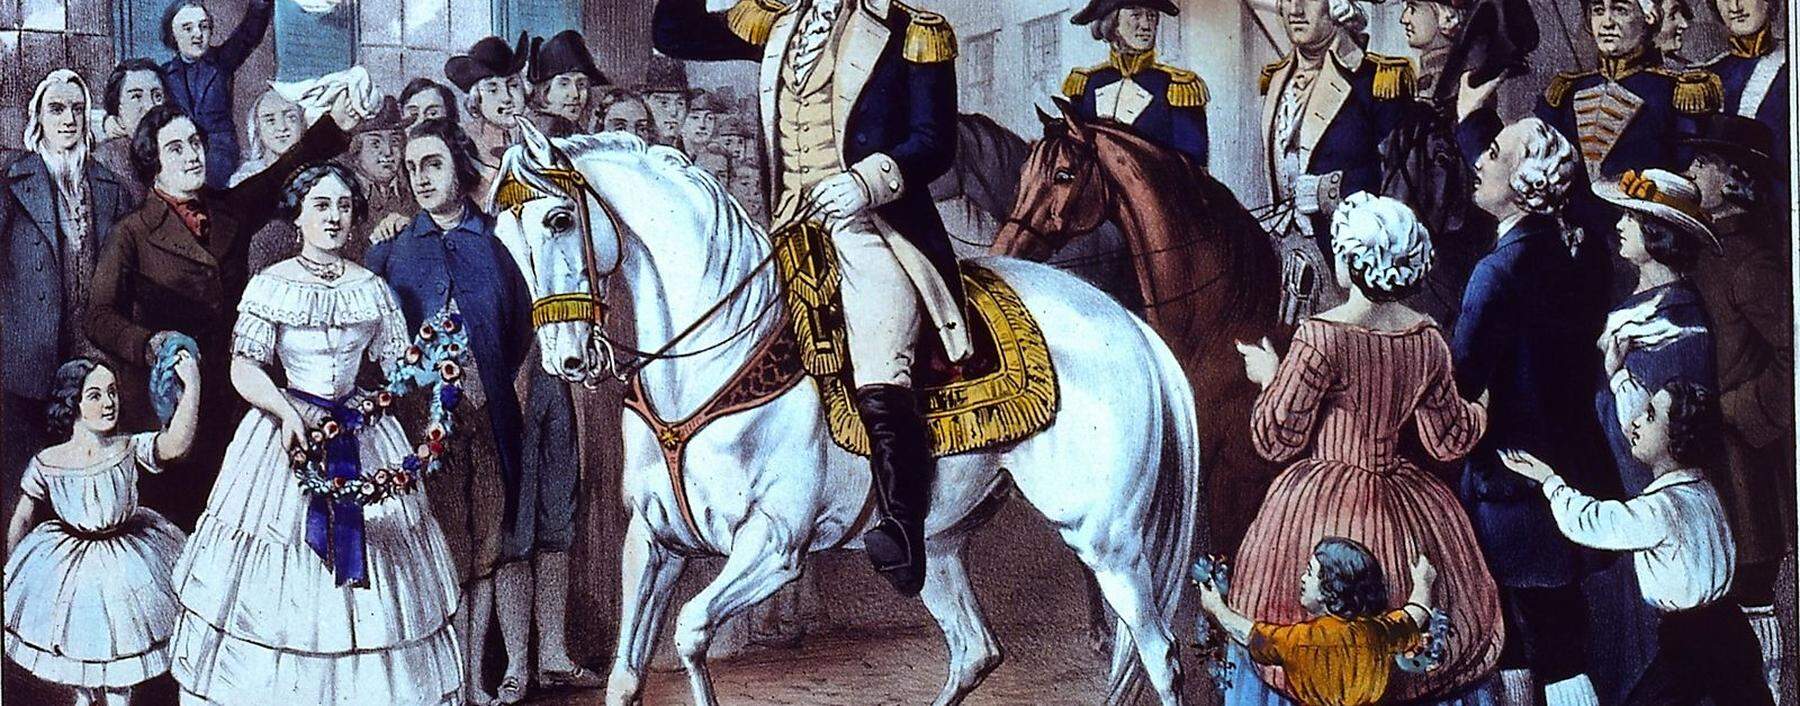 Triumphaler Einzug von George Washington 1783 in New York.